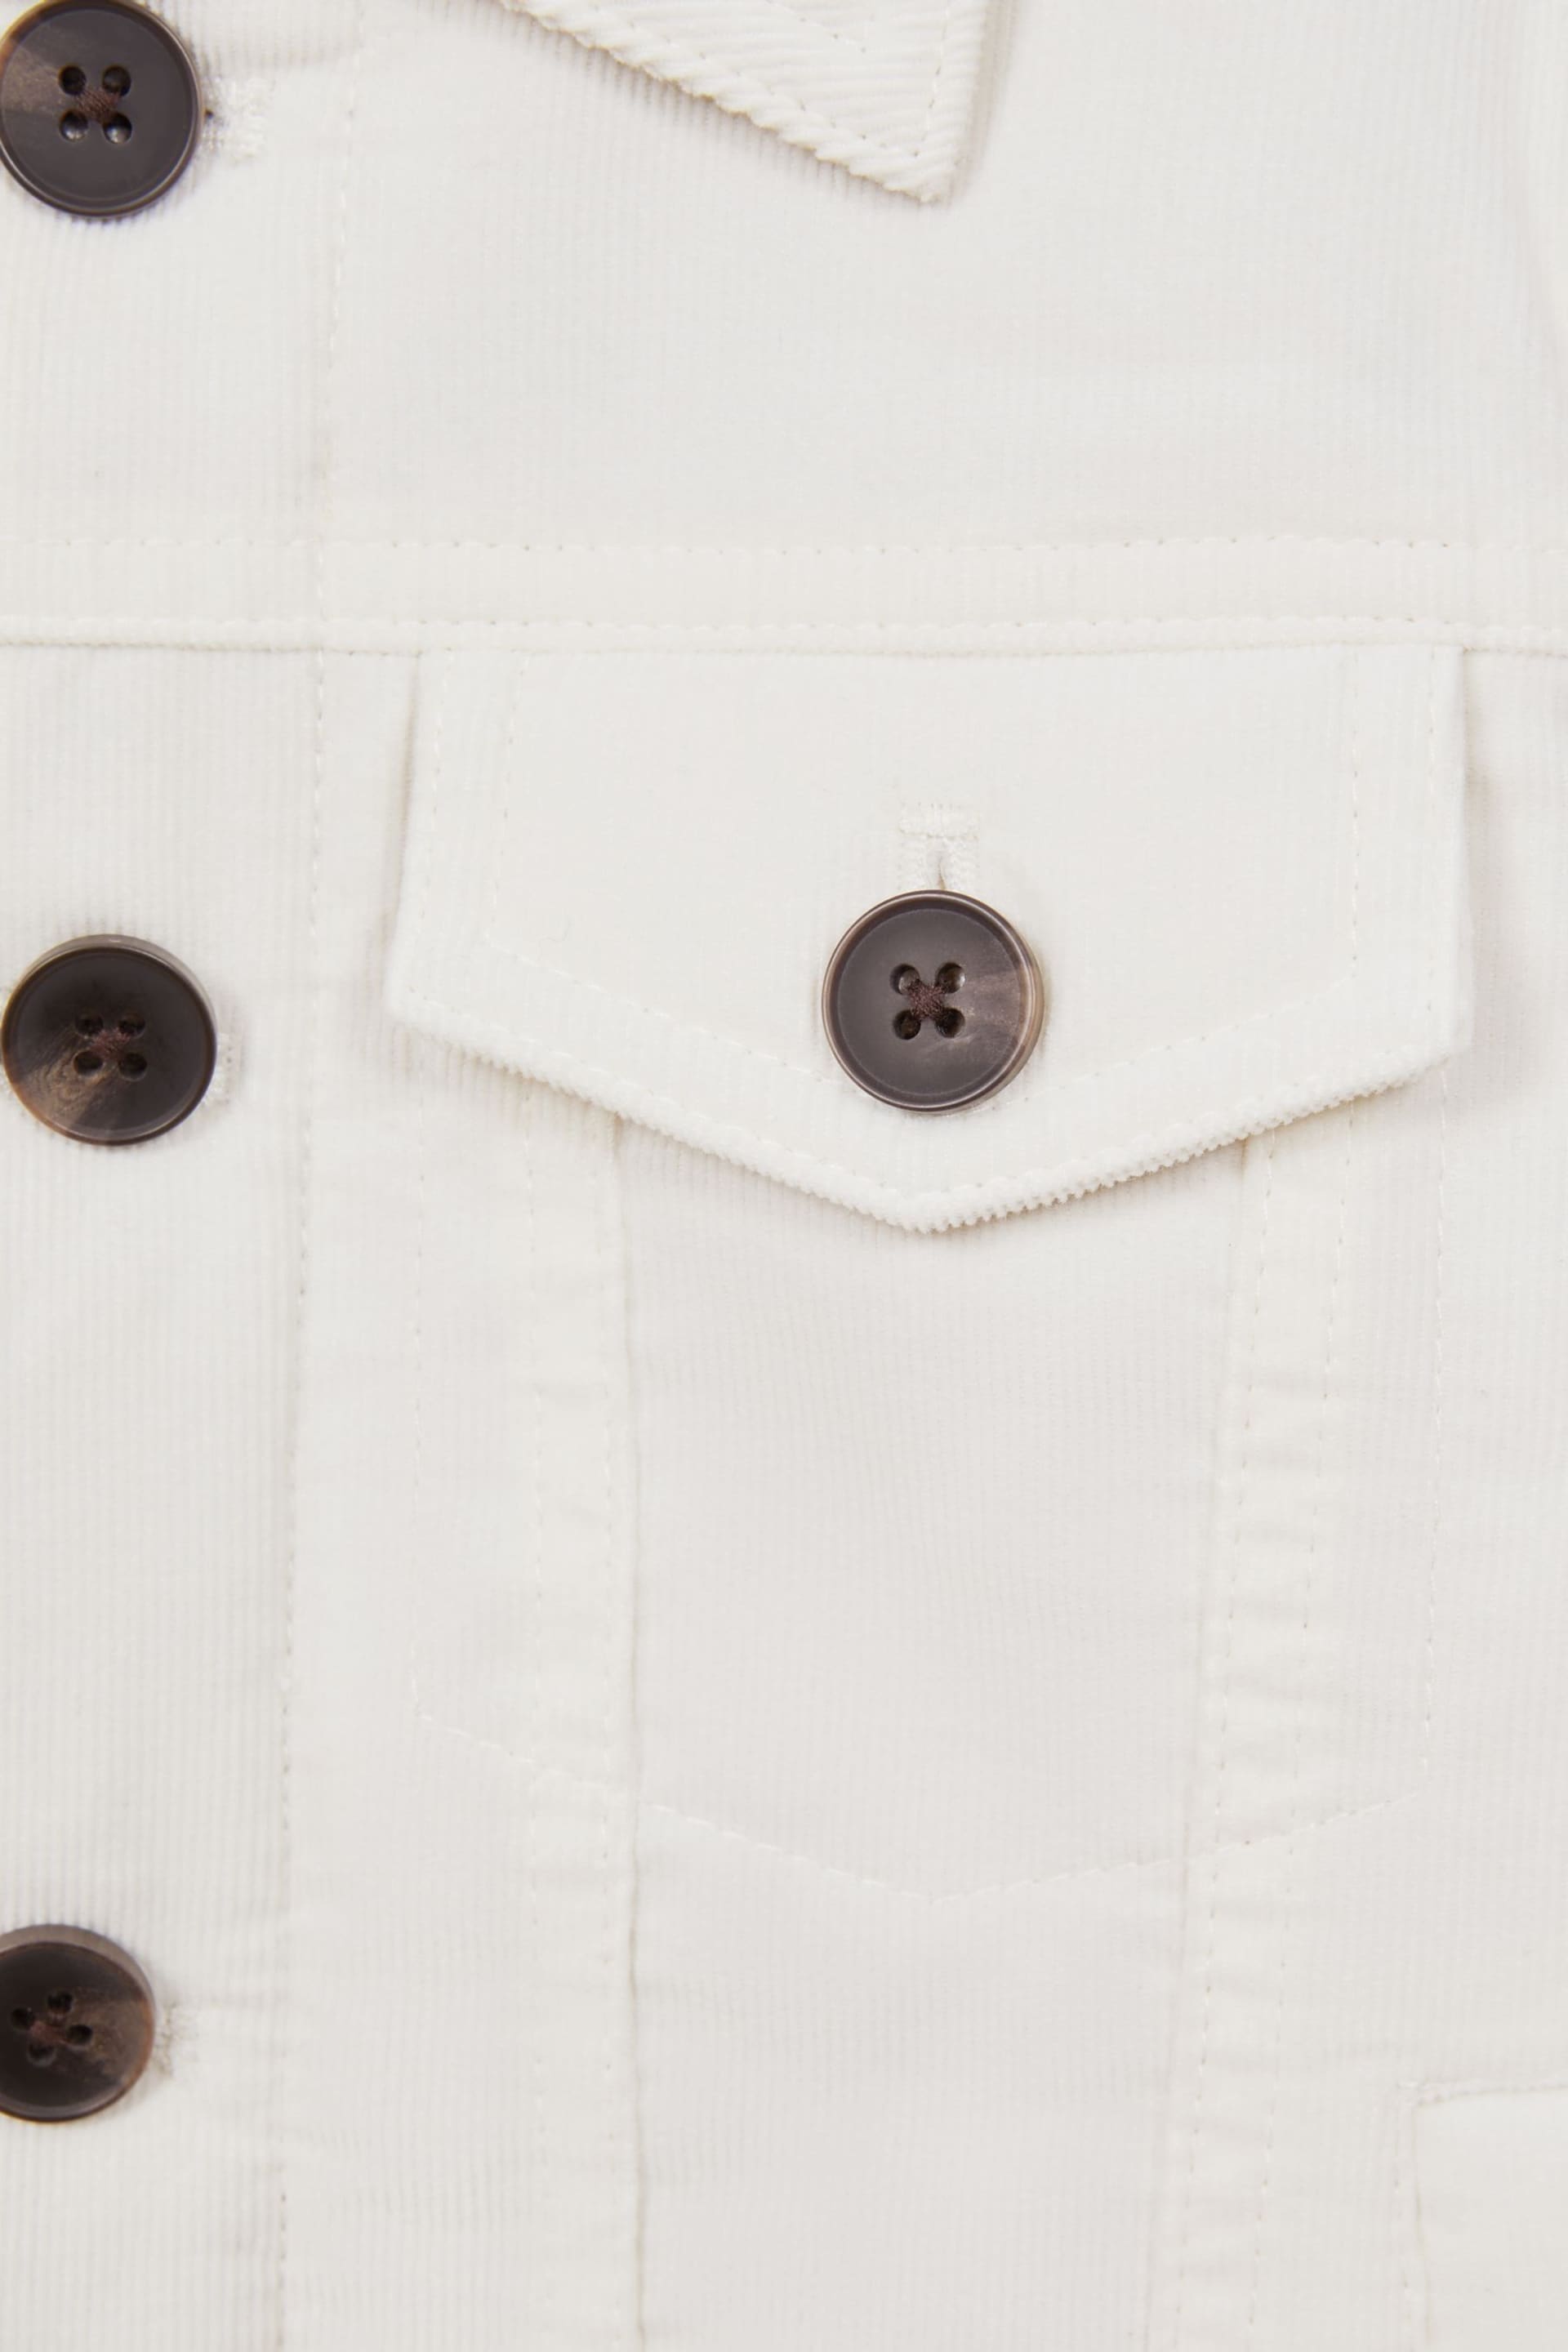 Reiss Ecru Diaz Senior Cord Button Through Jacket - Image 5 of 5